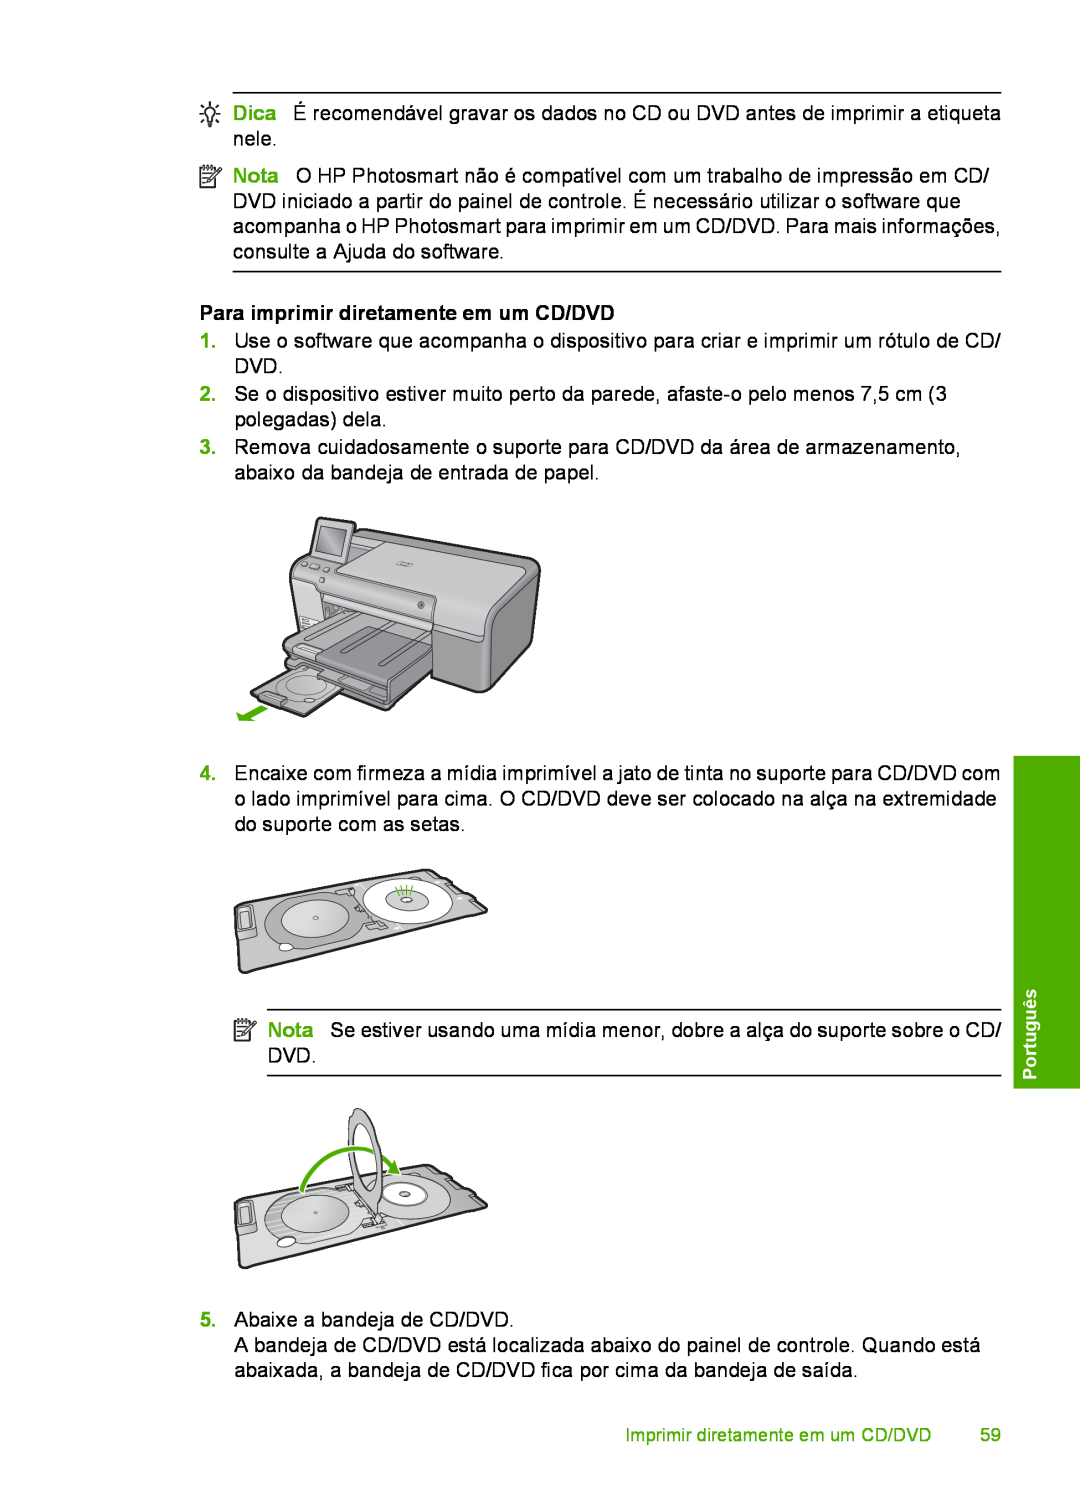 HP D7560 manual Para imprimir diretamente em um CD/DVD 